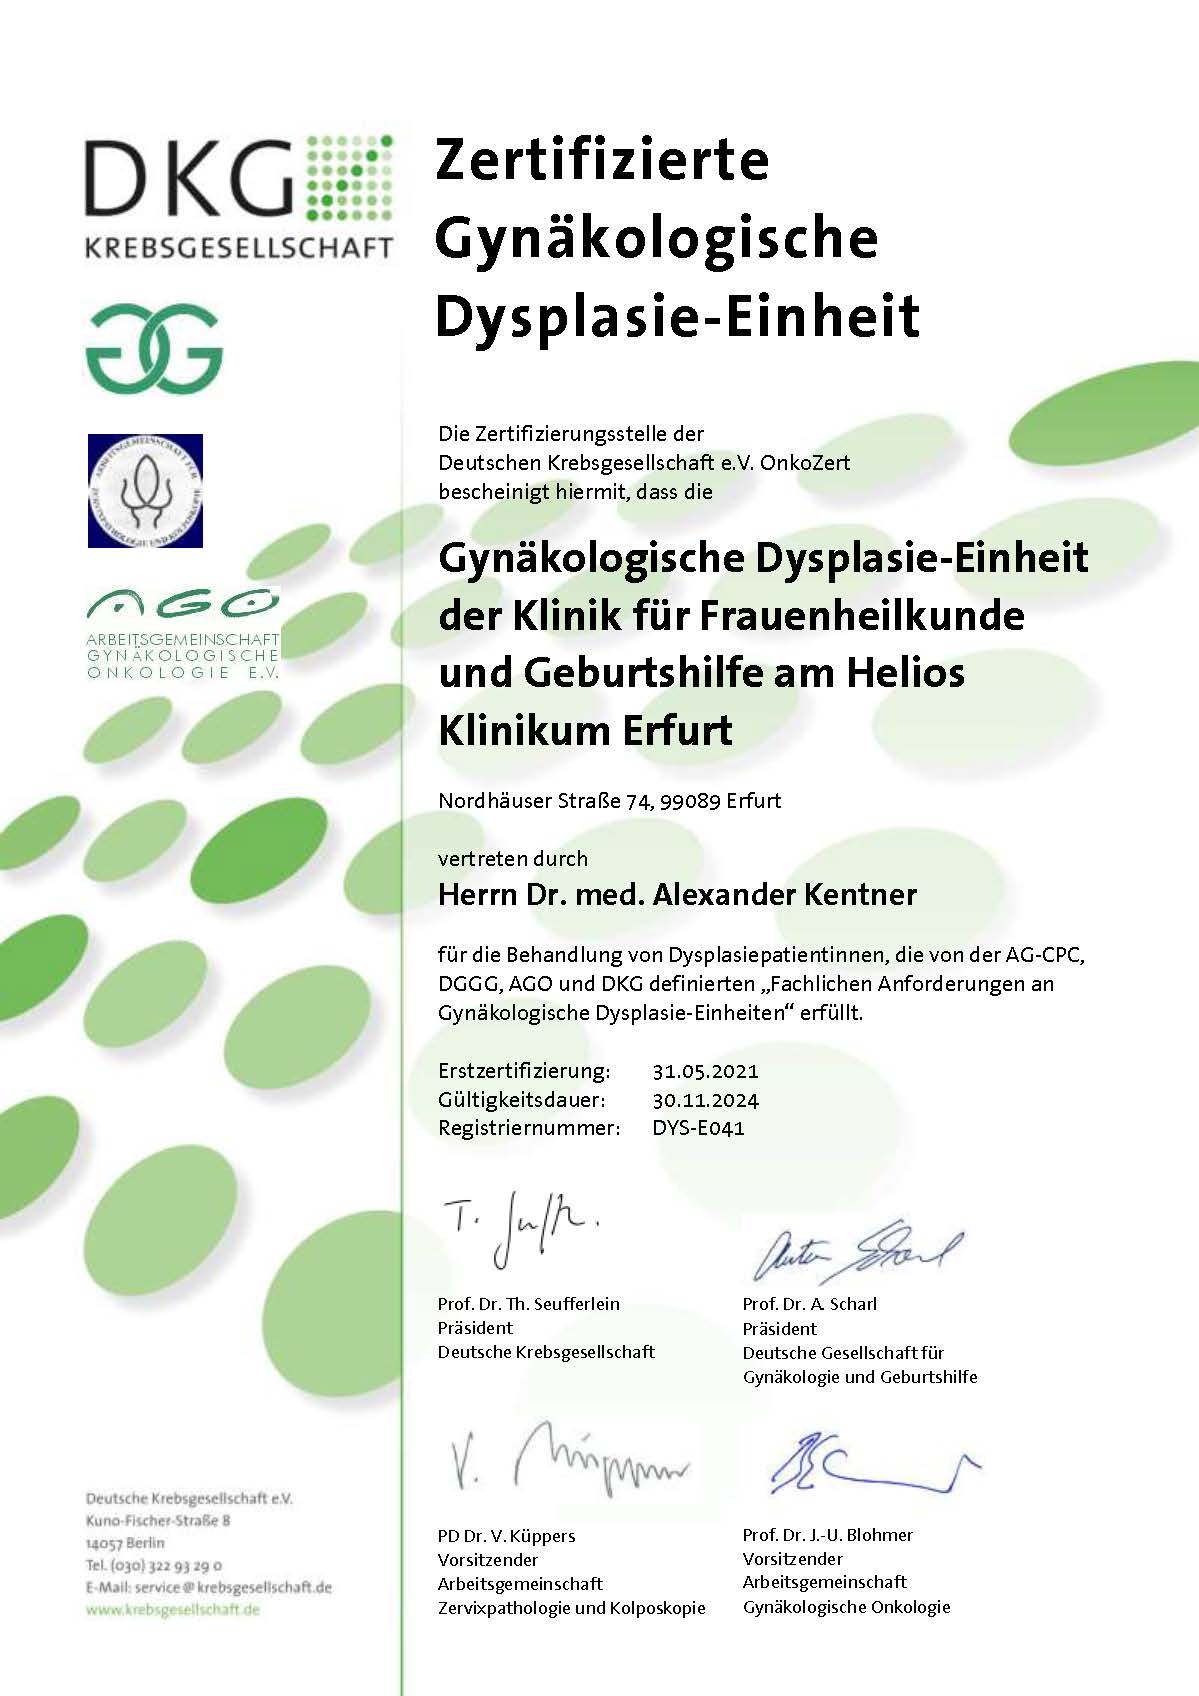 Wir sind von der Deutschen Krebsgesellschaft als Gynäkologische Dysplasie-Einheit zertifiziert.